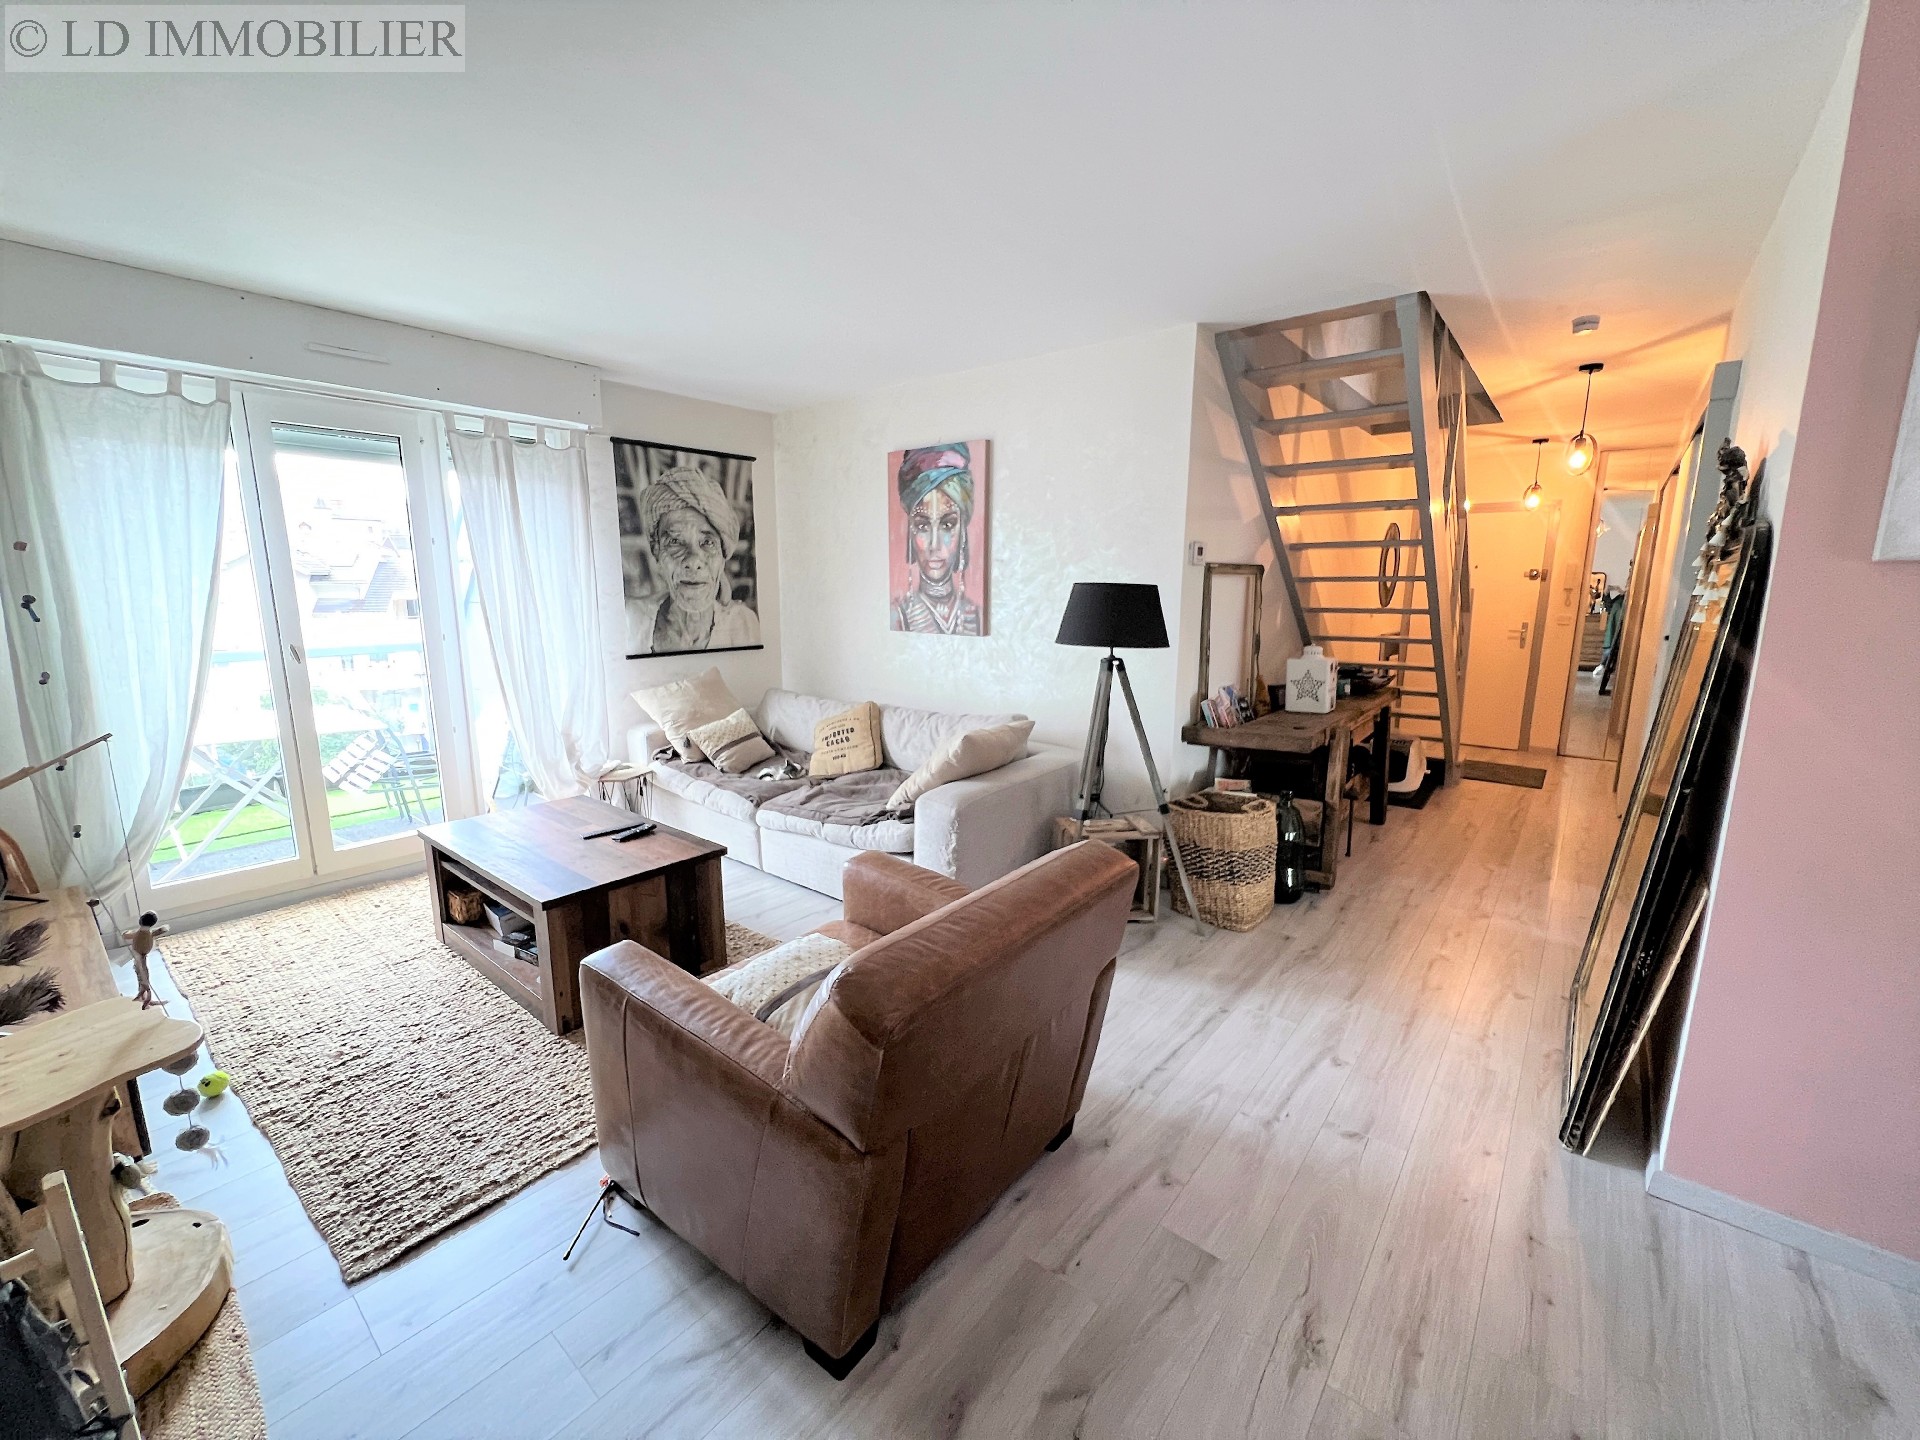 Vente appartement - CHALLES LES EAUX 98 m², 5 pièces